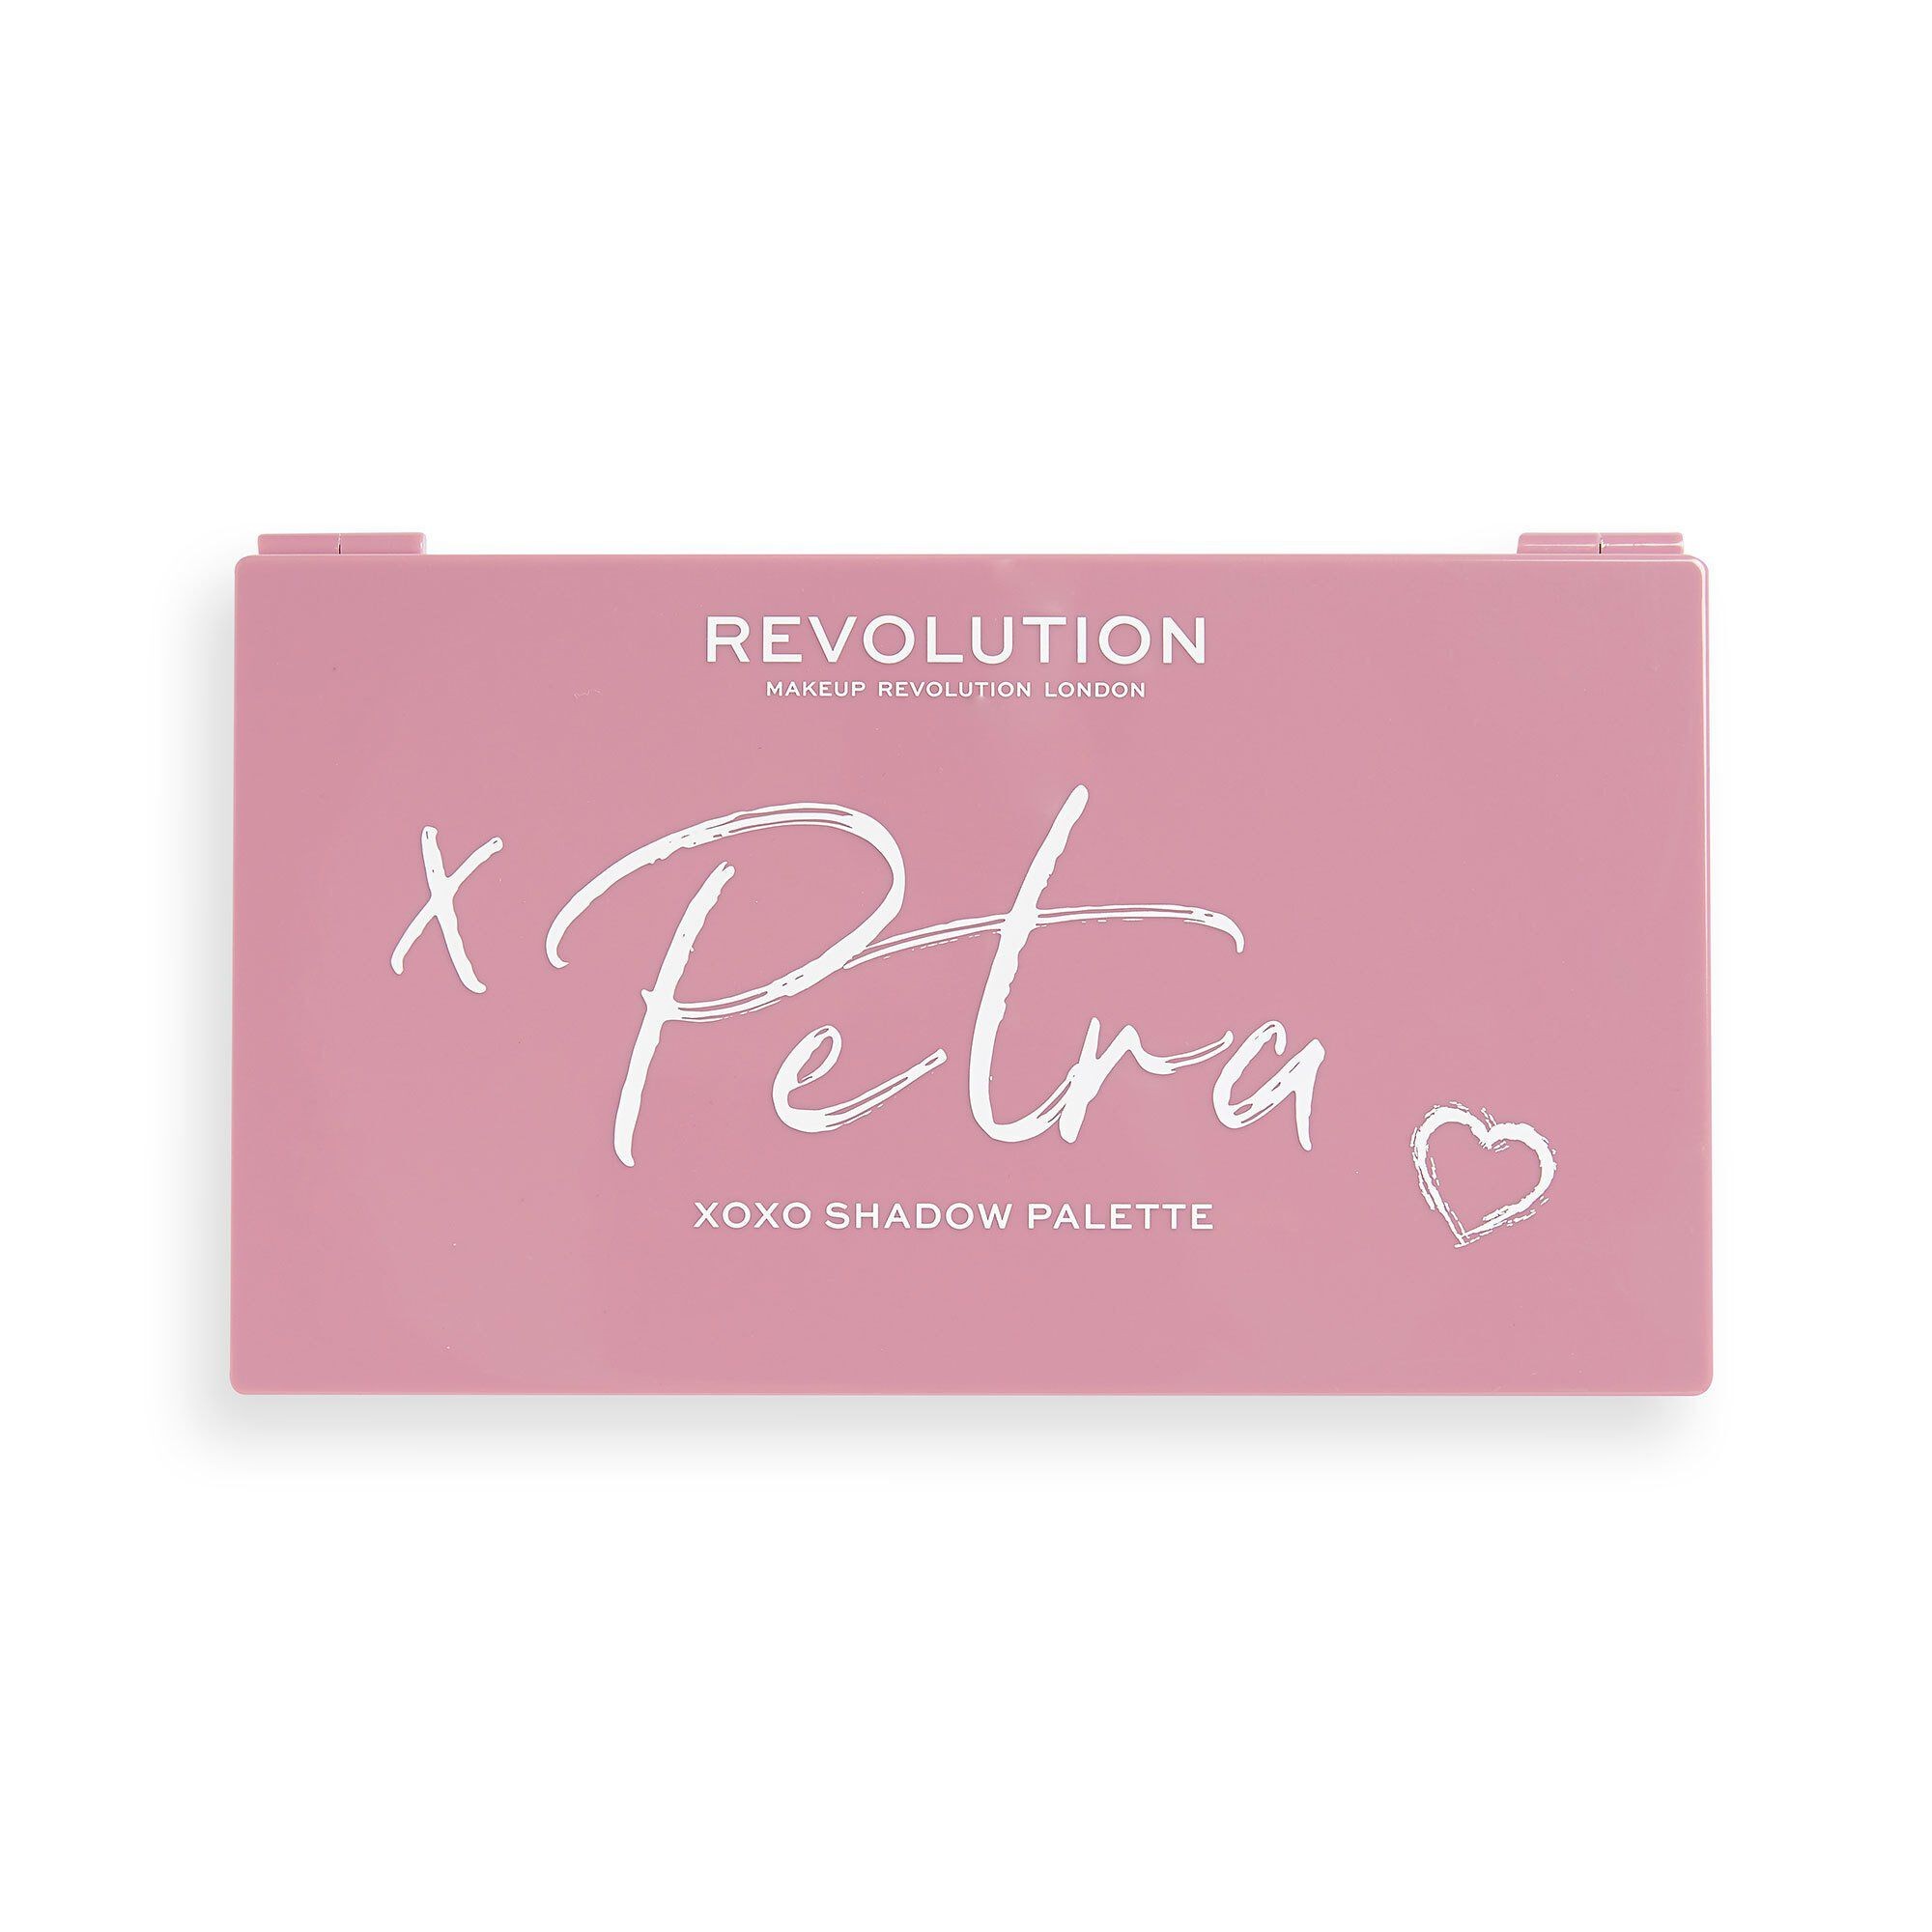 Palette de Fards à Paupières - Revolution X Petra XOXO Eyeshadow Palette 